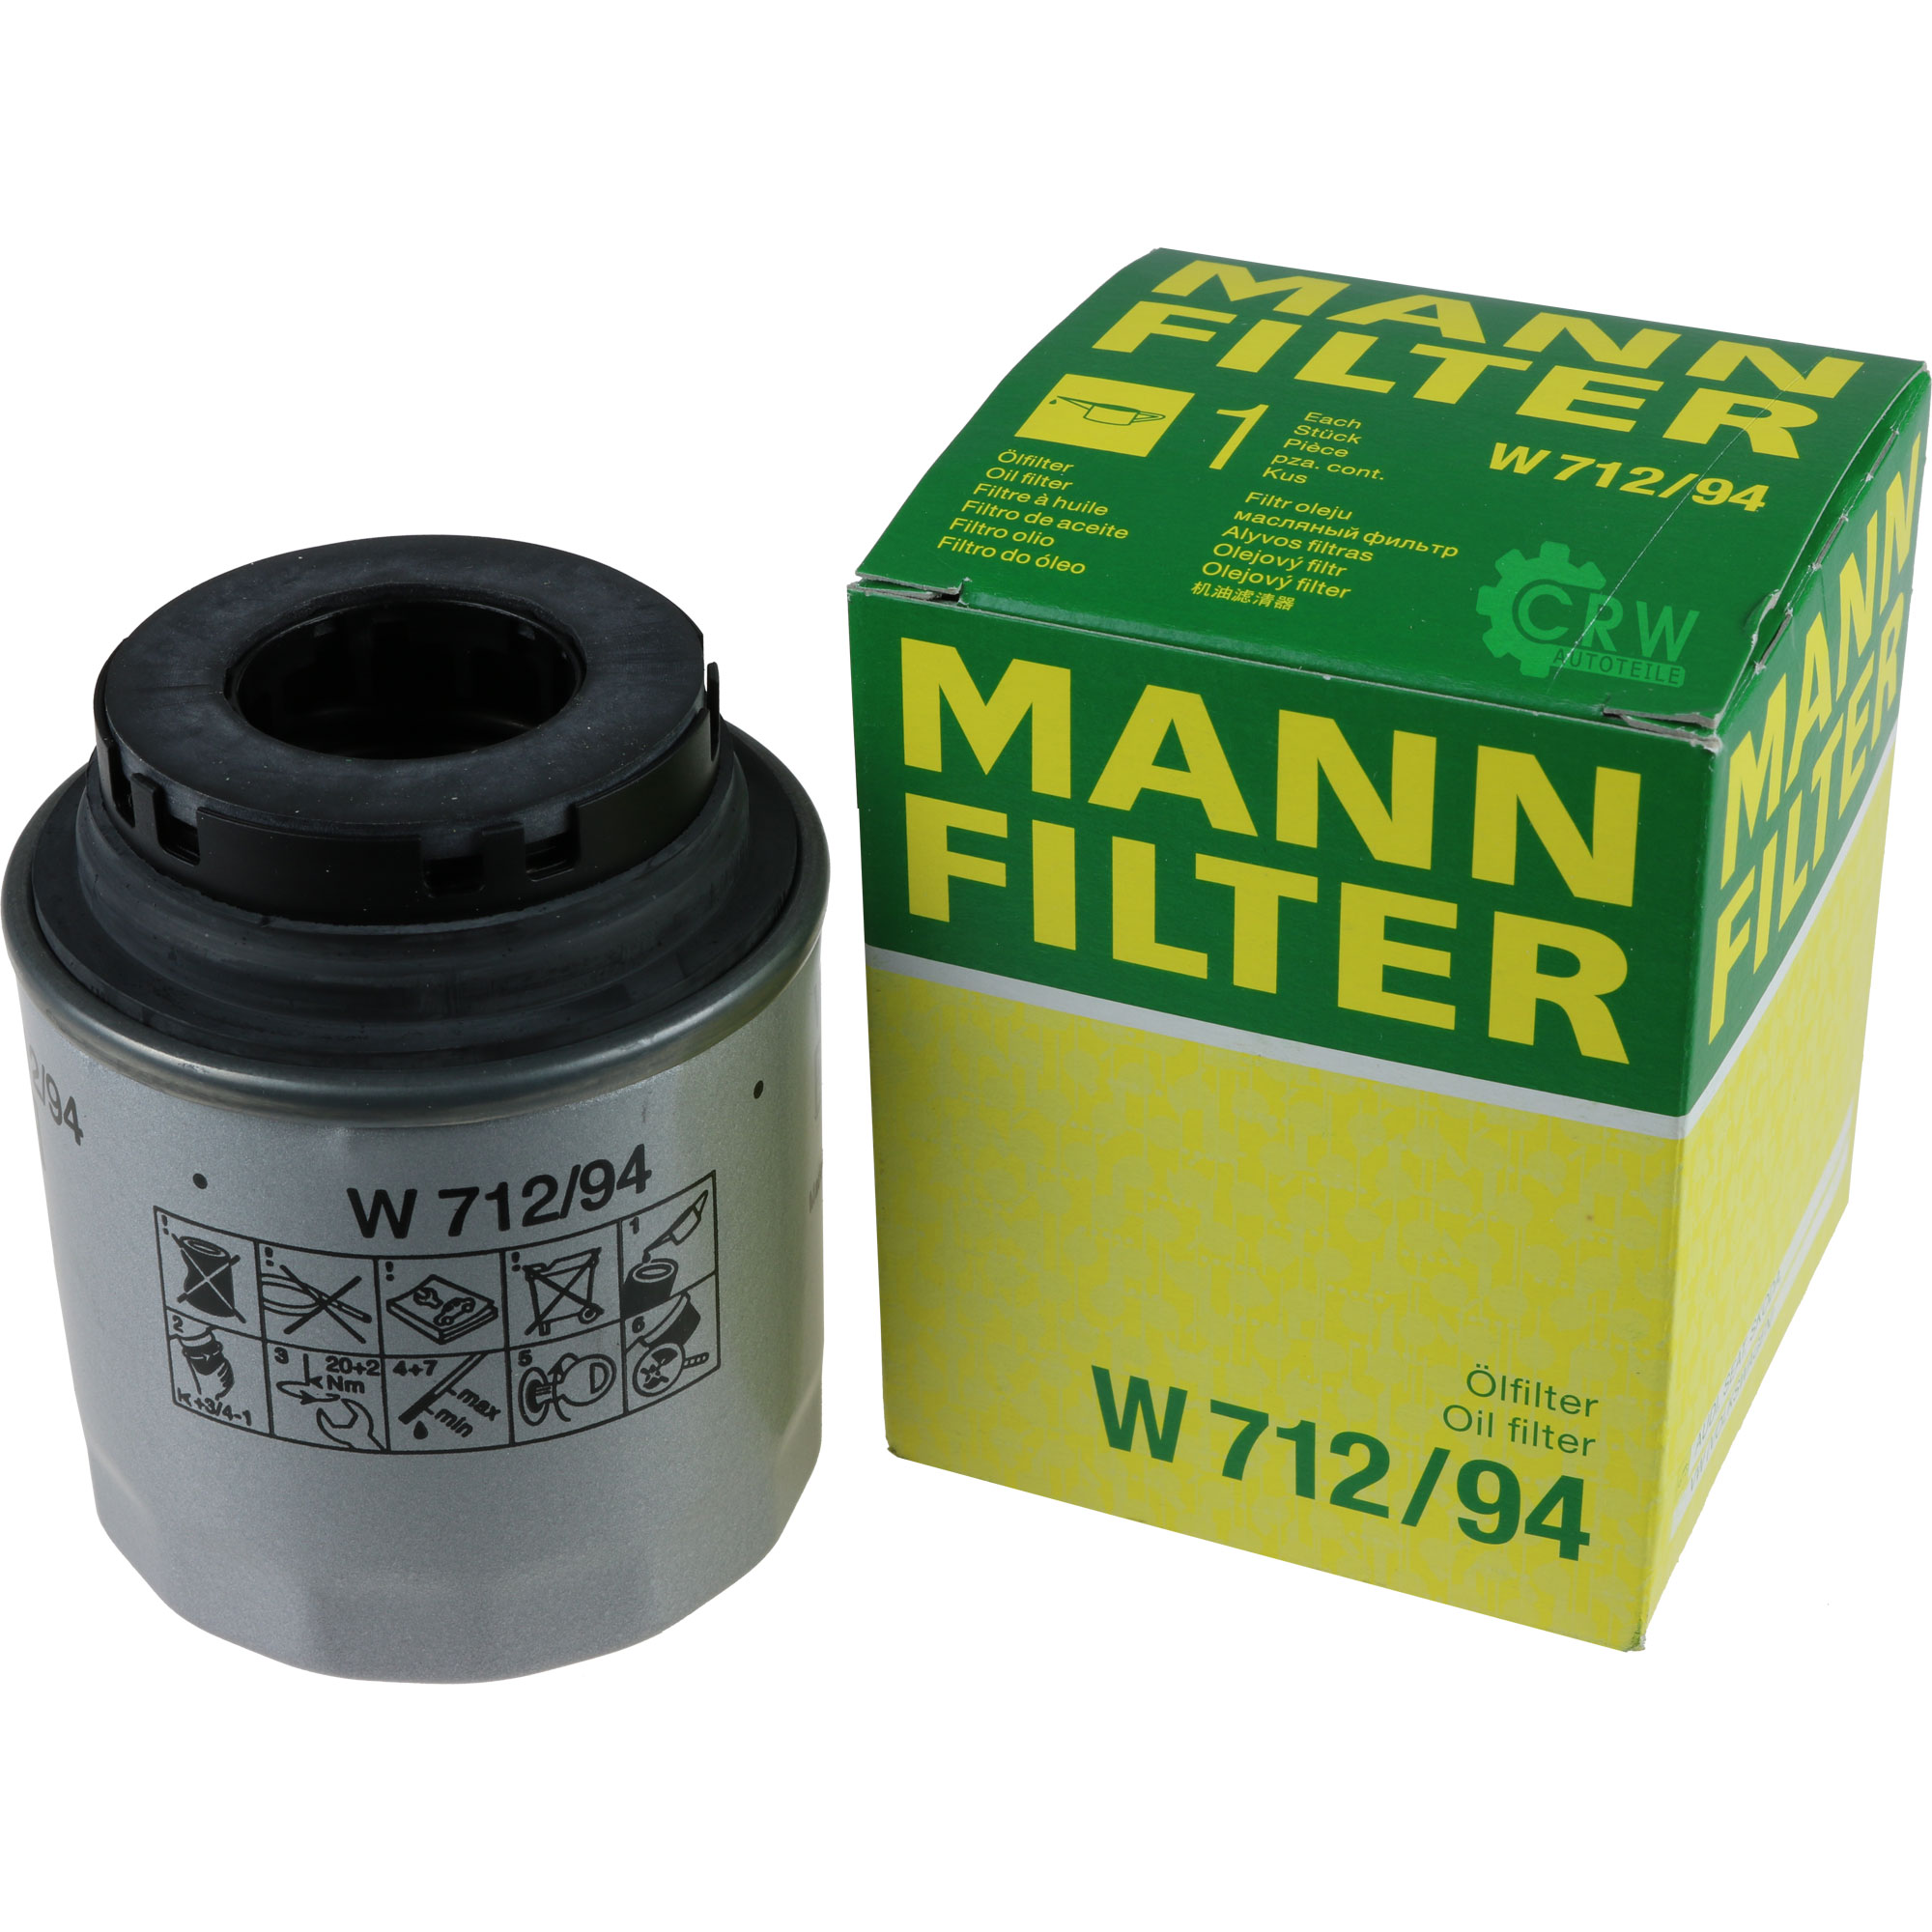 MANN-FILTER Ölfilter W 712/94 Oil Filter